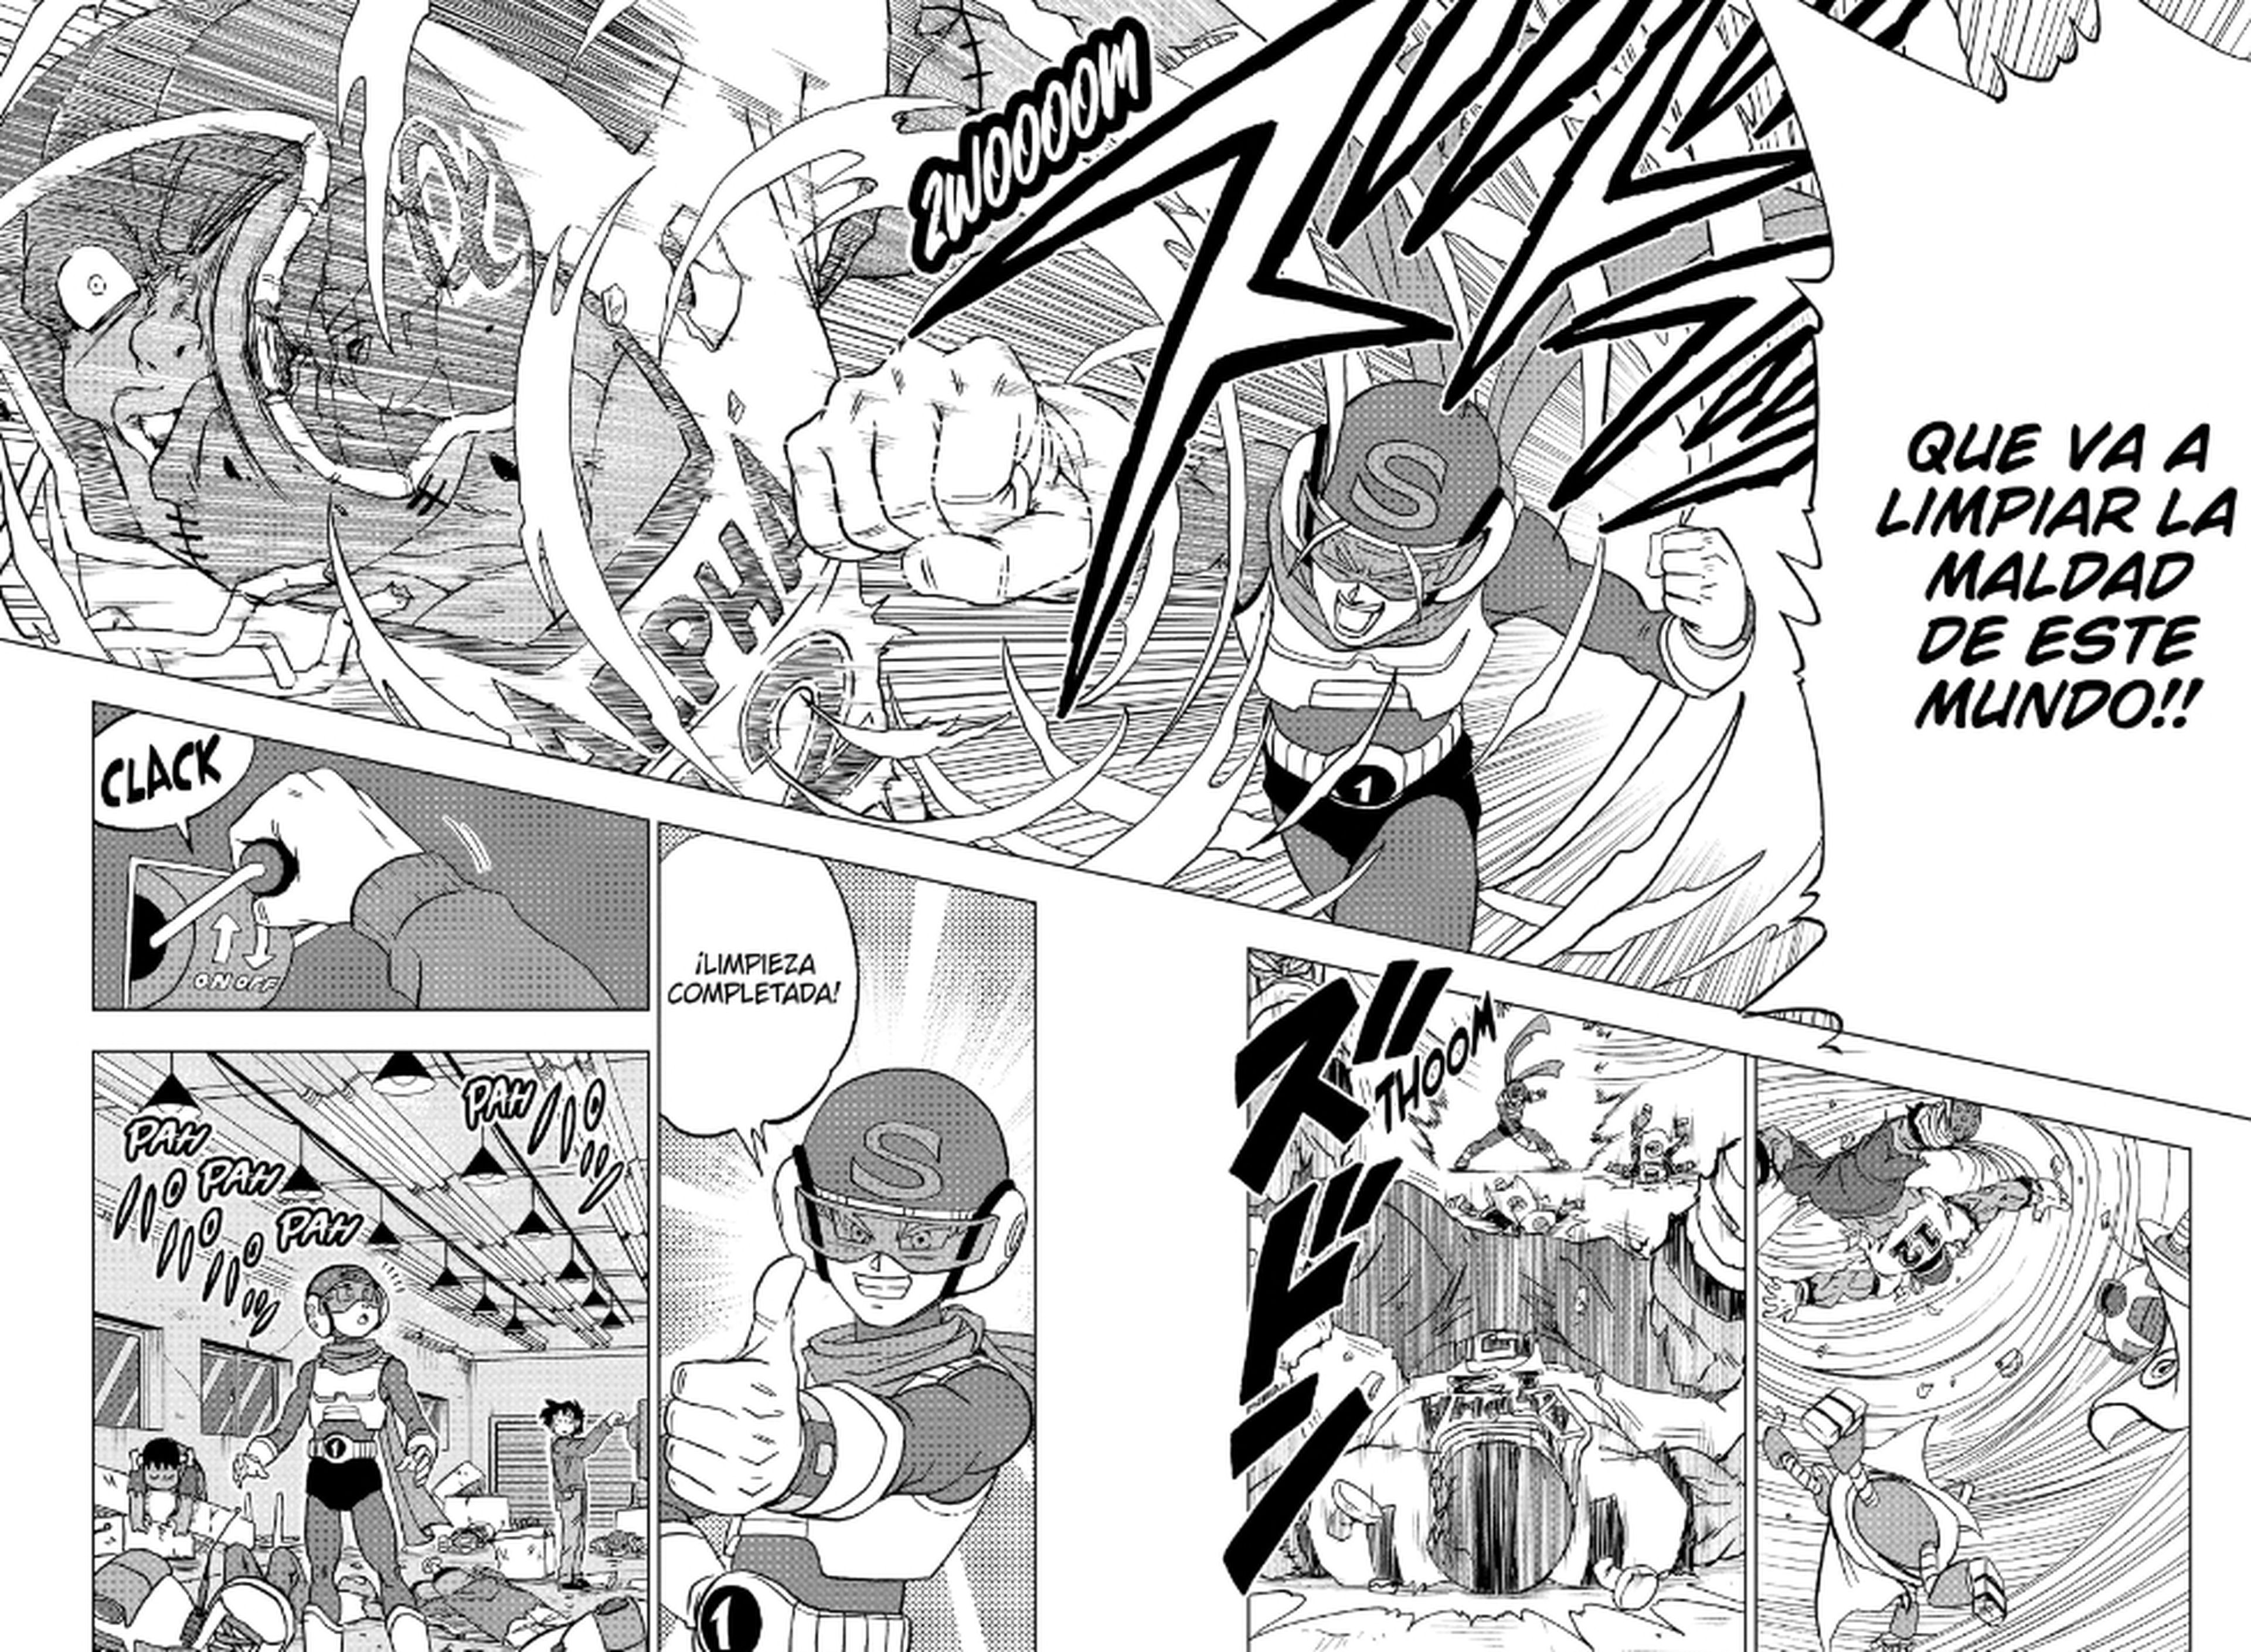 Crítica del manga Dragon Ball Super 88: El nacimiento de los superhéroes